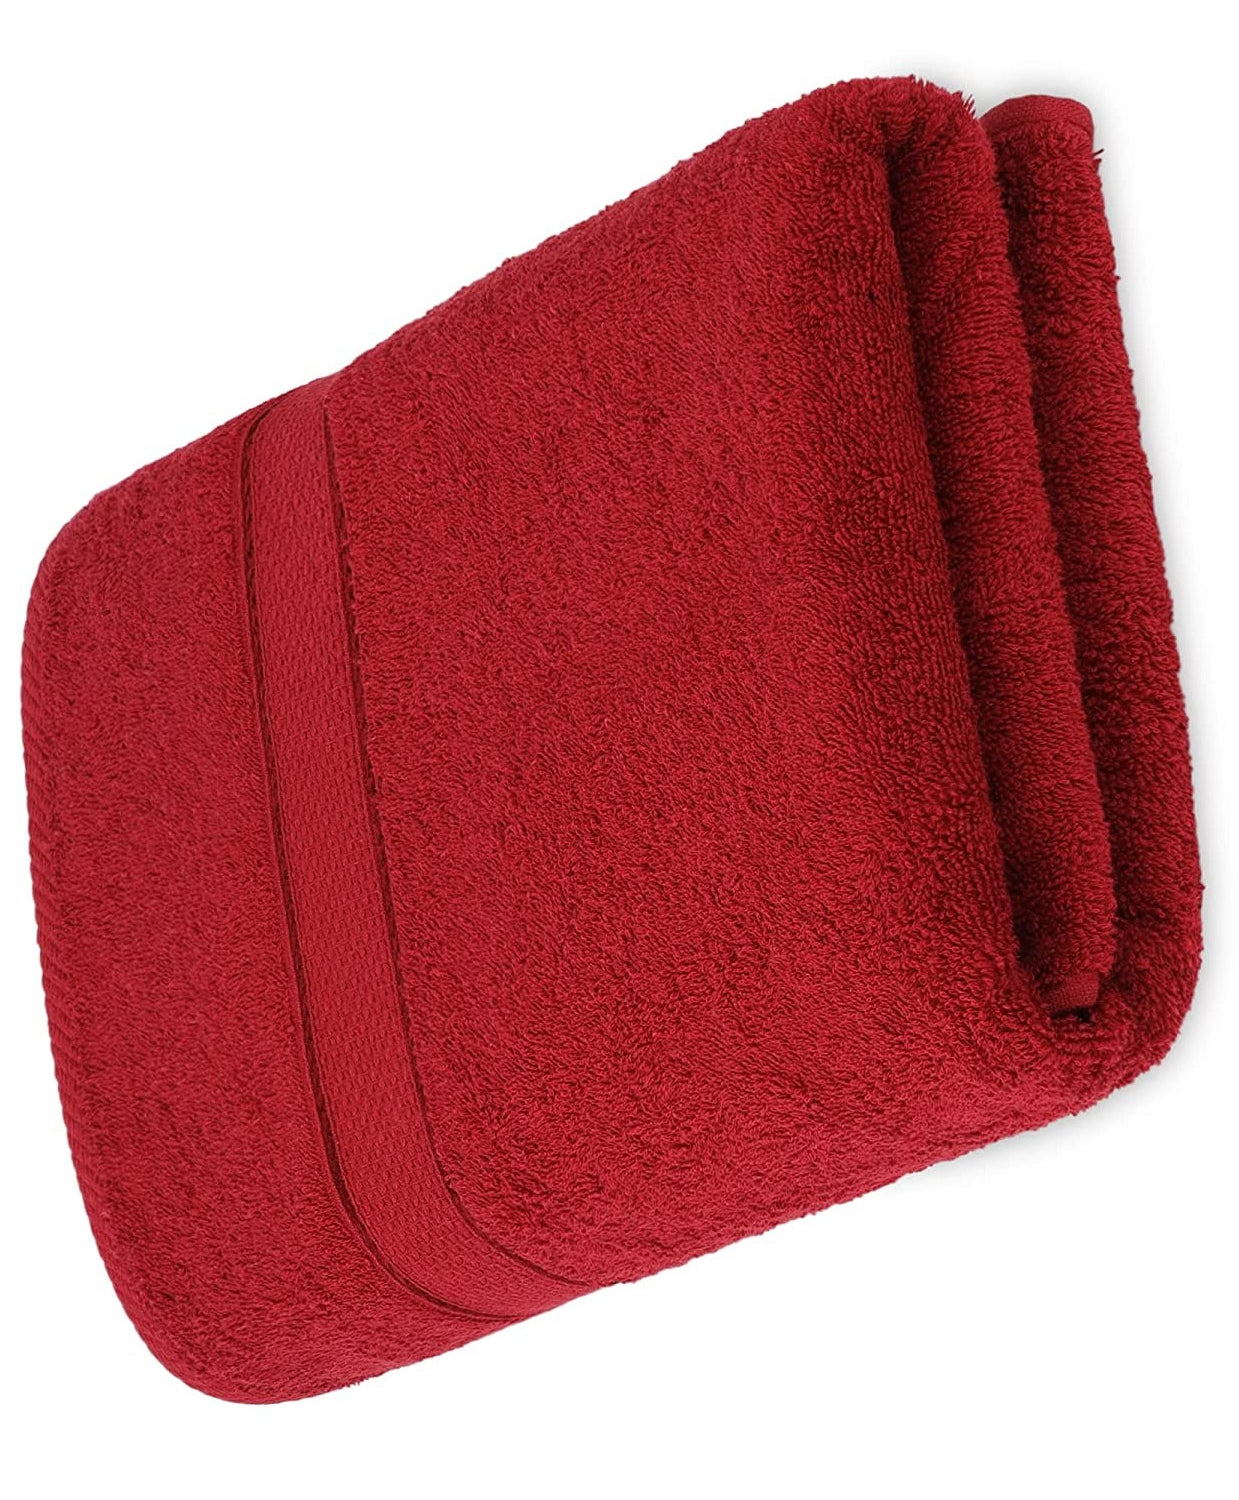 Toro Blu Toro Blu Large Size Bath Towel 500 GSM for Men & Women,140x70cm (RED) Toro Blu 499.00 Toro Blu  Toro Blu Large Size Bath Towel 500 GSM for Men & Women,140x70cm (RED)